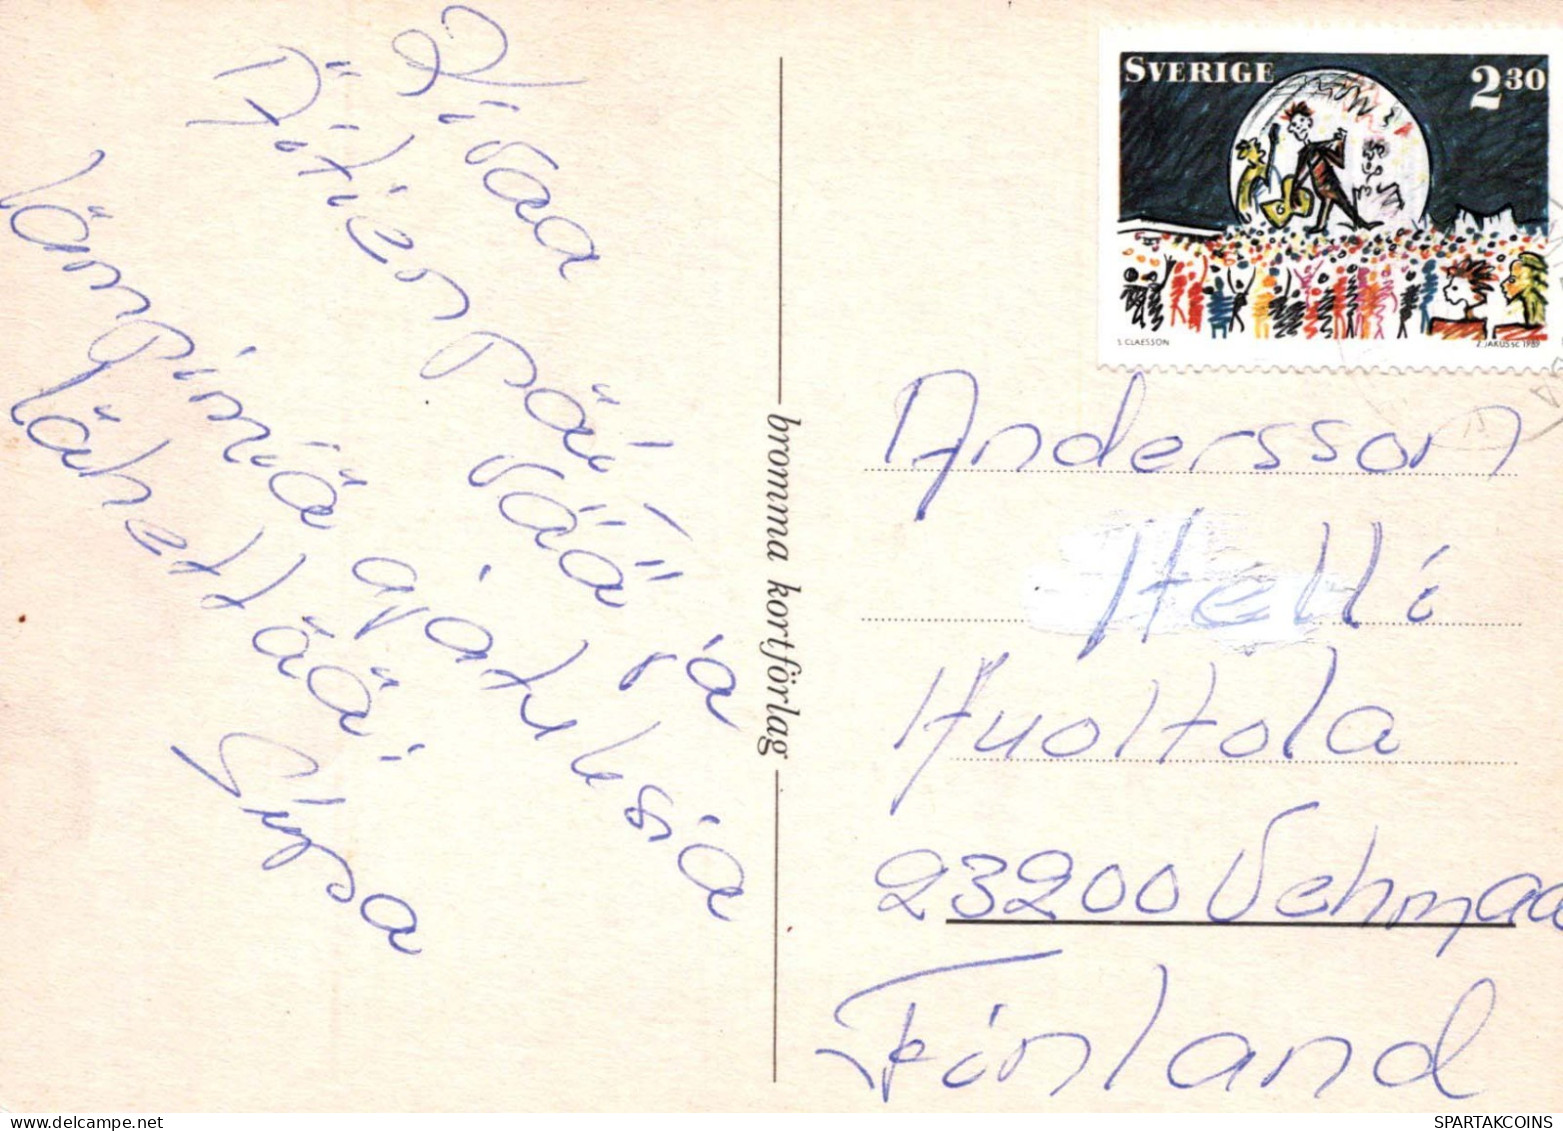 FLORES Vintage Tarjeta Postal CPSM #PAS240.ES - Fleurs